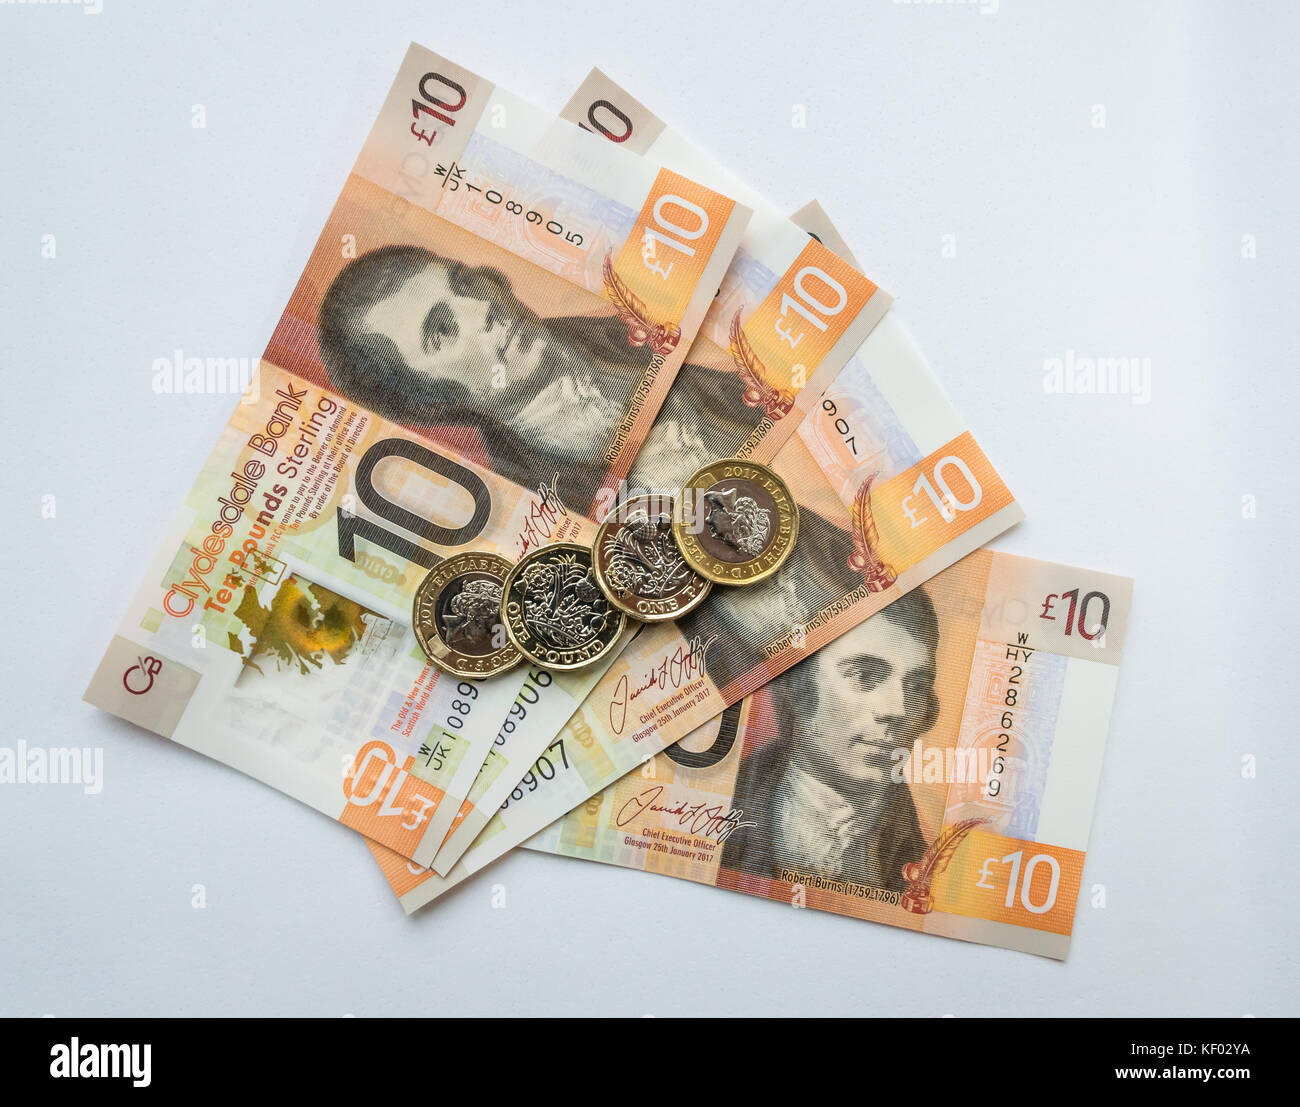 Kunststoff Polymer Clydesdale Bank Schottischen zehn Pfund £ 10 Banknoten mit Robert Burns und Sechskant ein Pfund £ 1 Münzen auf einem schlichten weißen Hintergrund Stockfoto